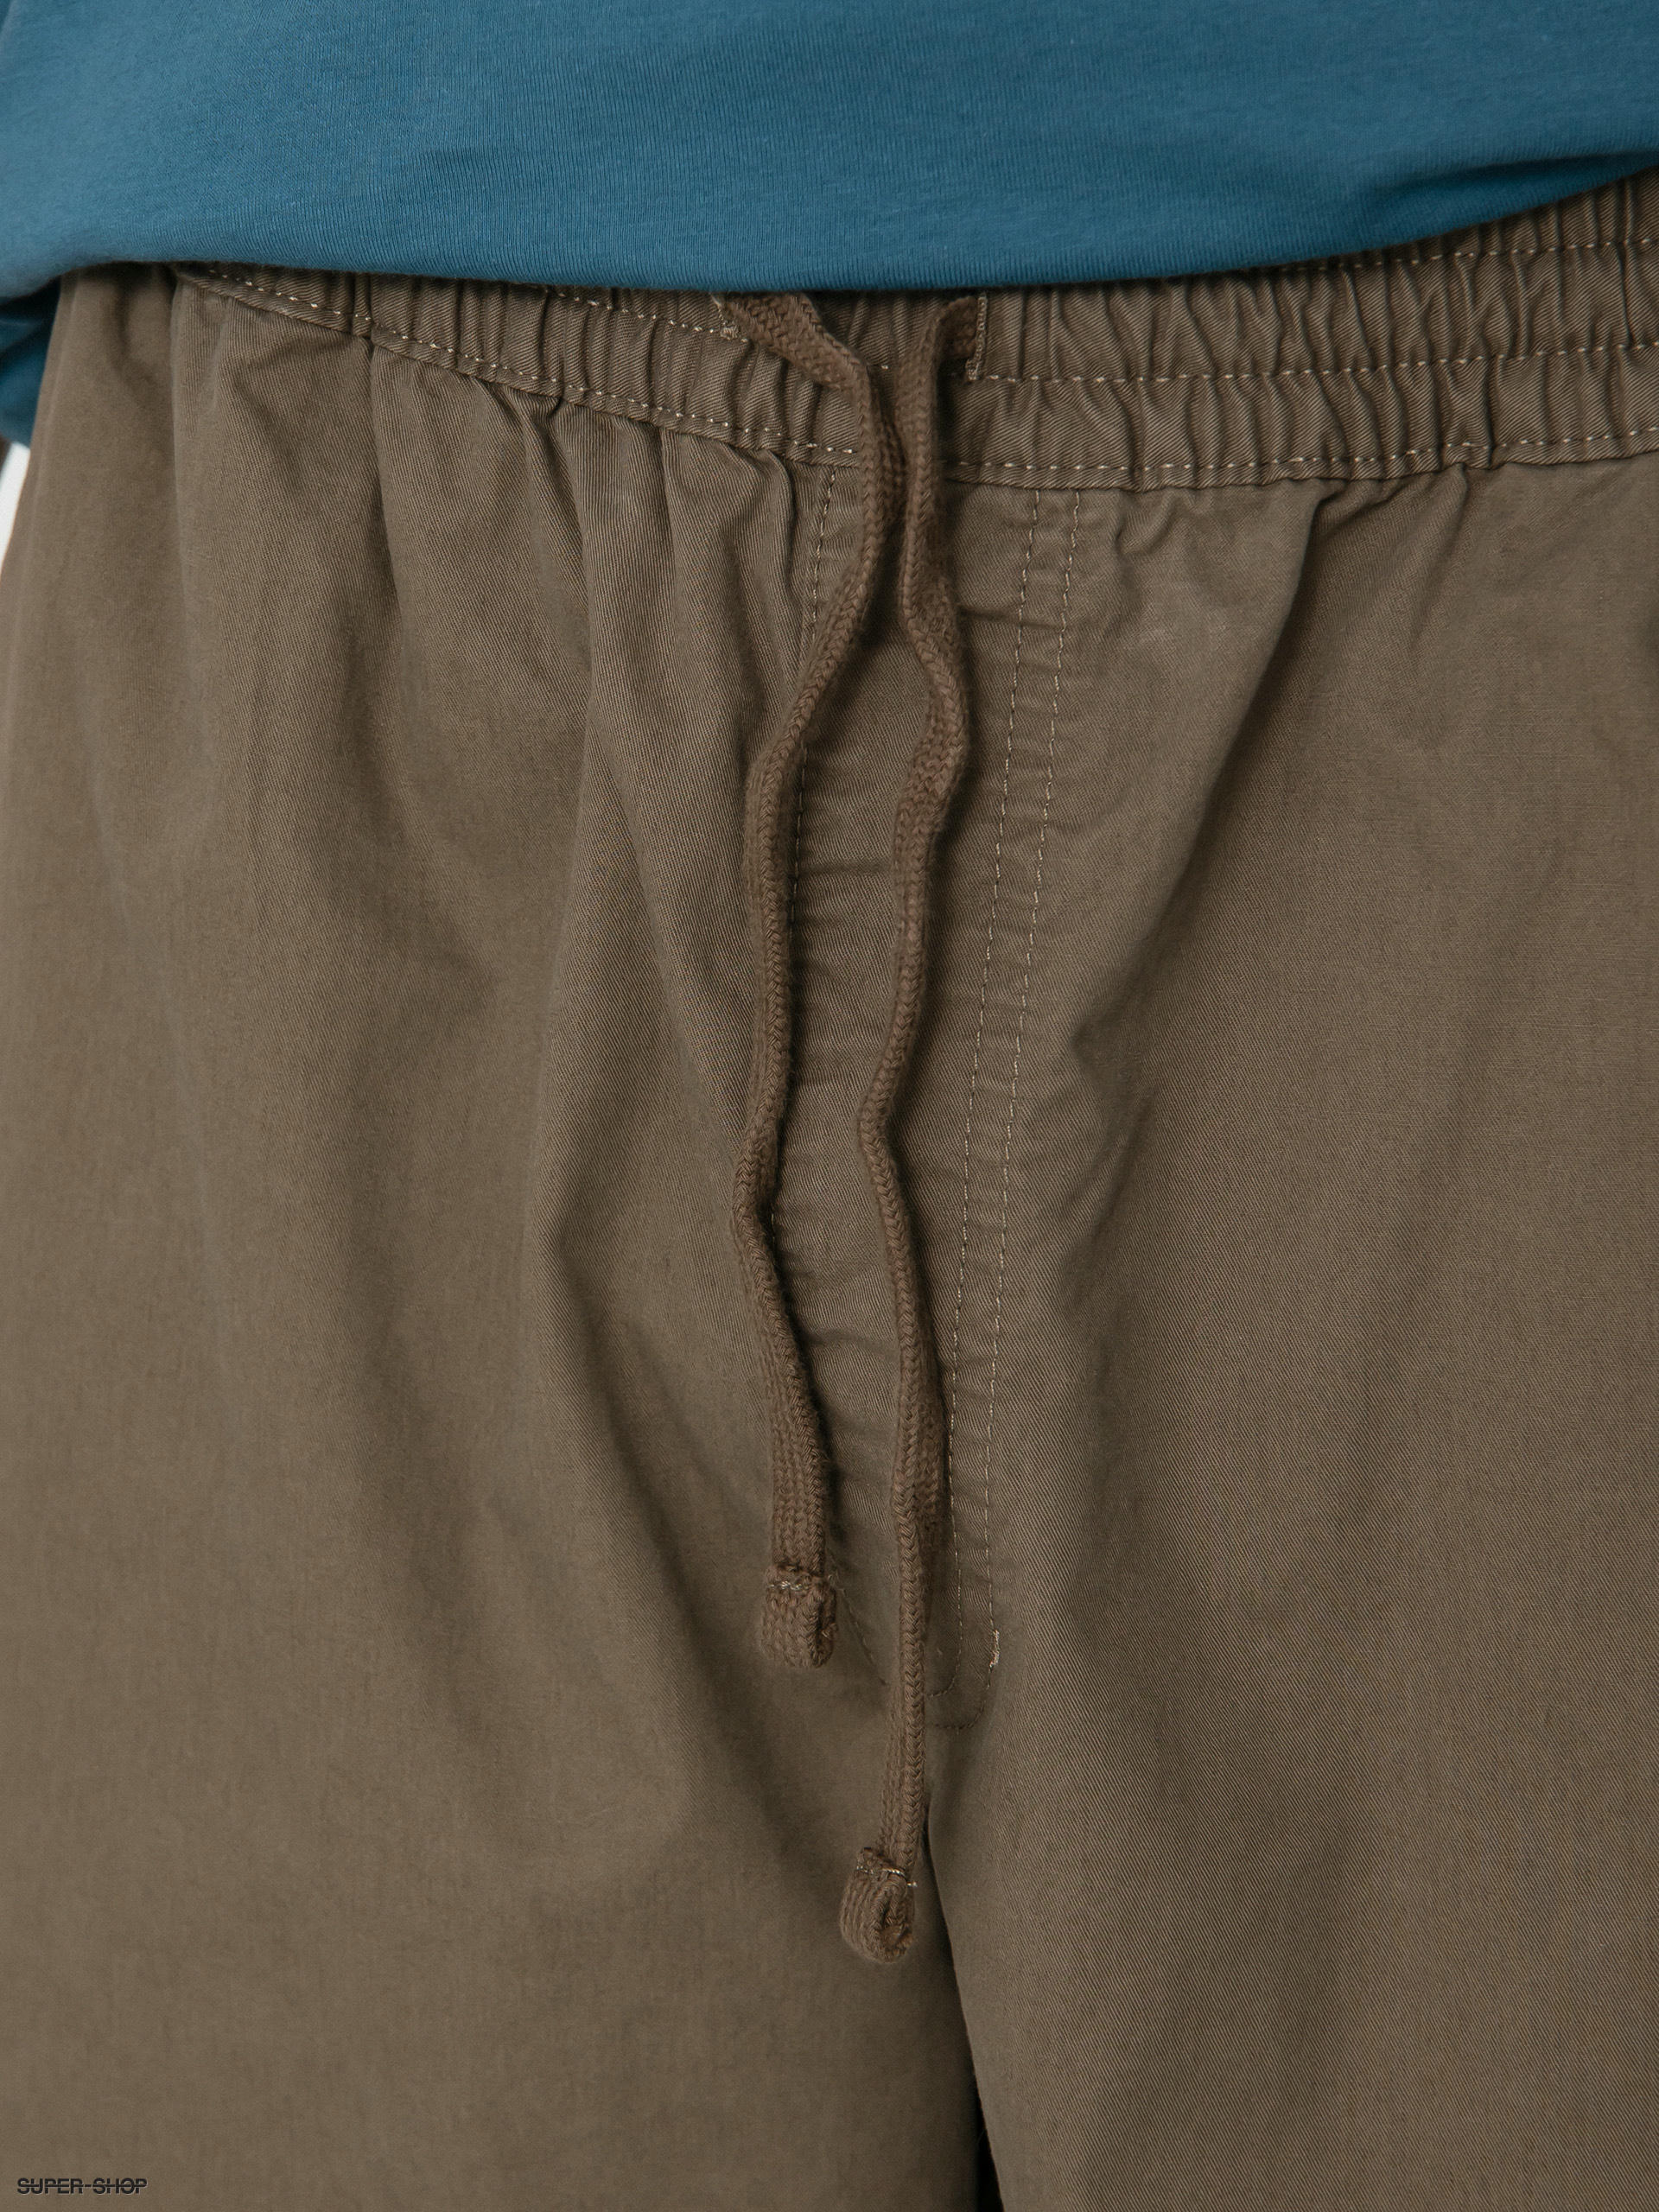 VANS RANGE BAGGY TAPERED ELASTIC WAIST PANT, Khaki Men's Casual Pants